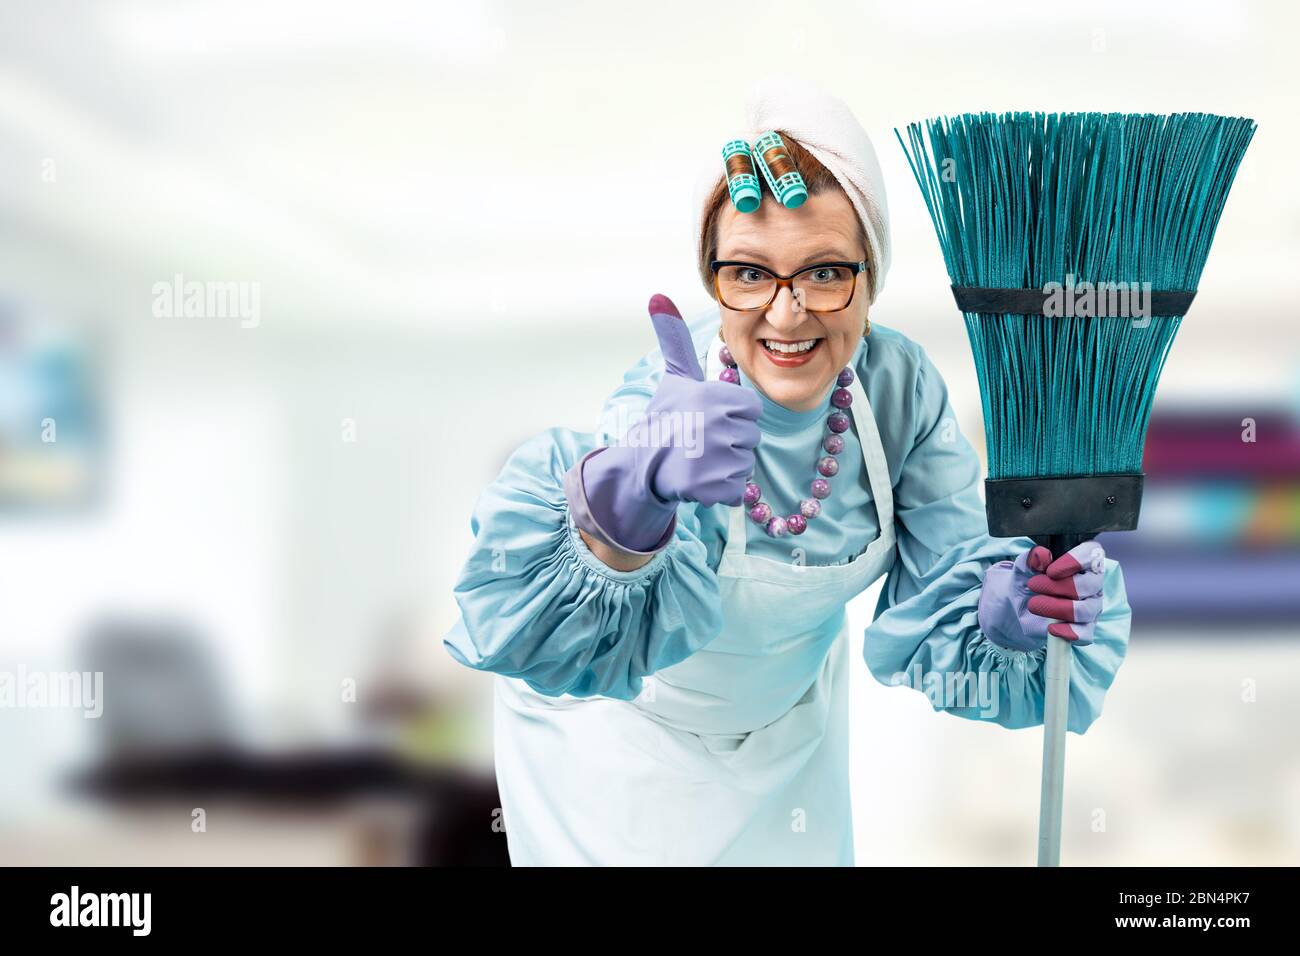 Porträt einer Putzfrau mit einem Putzbesen in den Händen. Eine Putzfrau in Uniform steht gegen ein helles Büro. Stockfoto